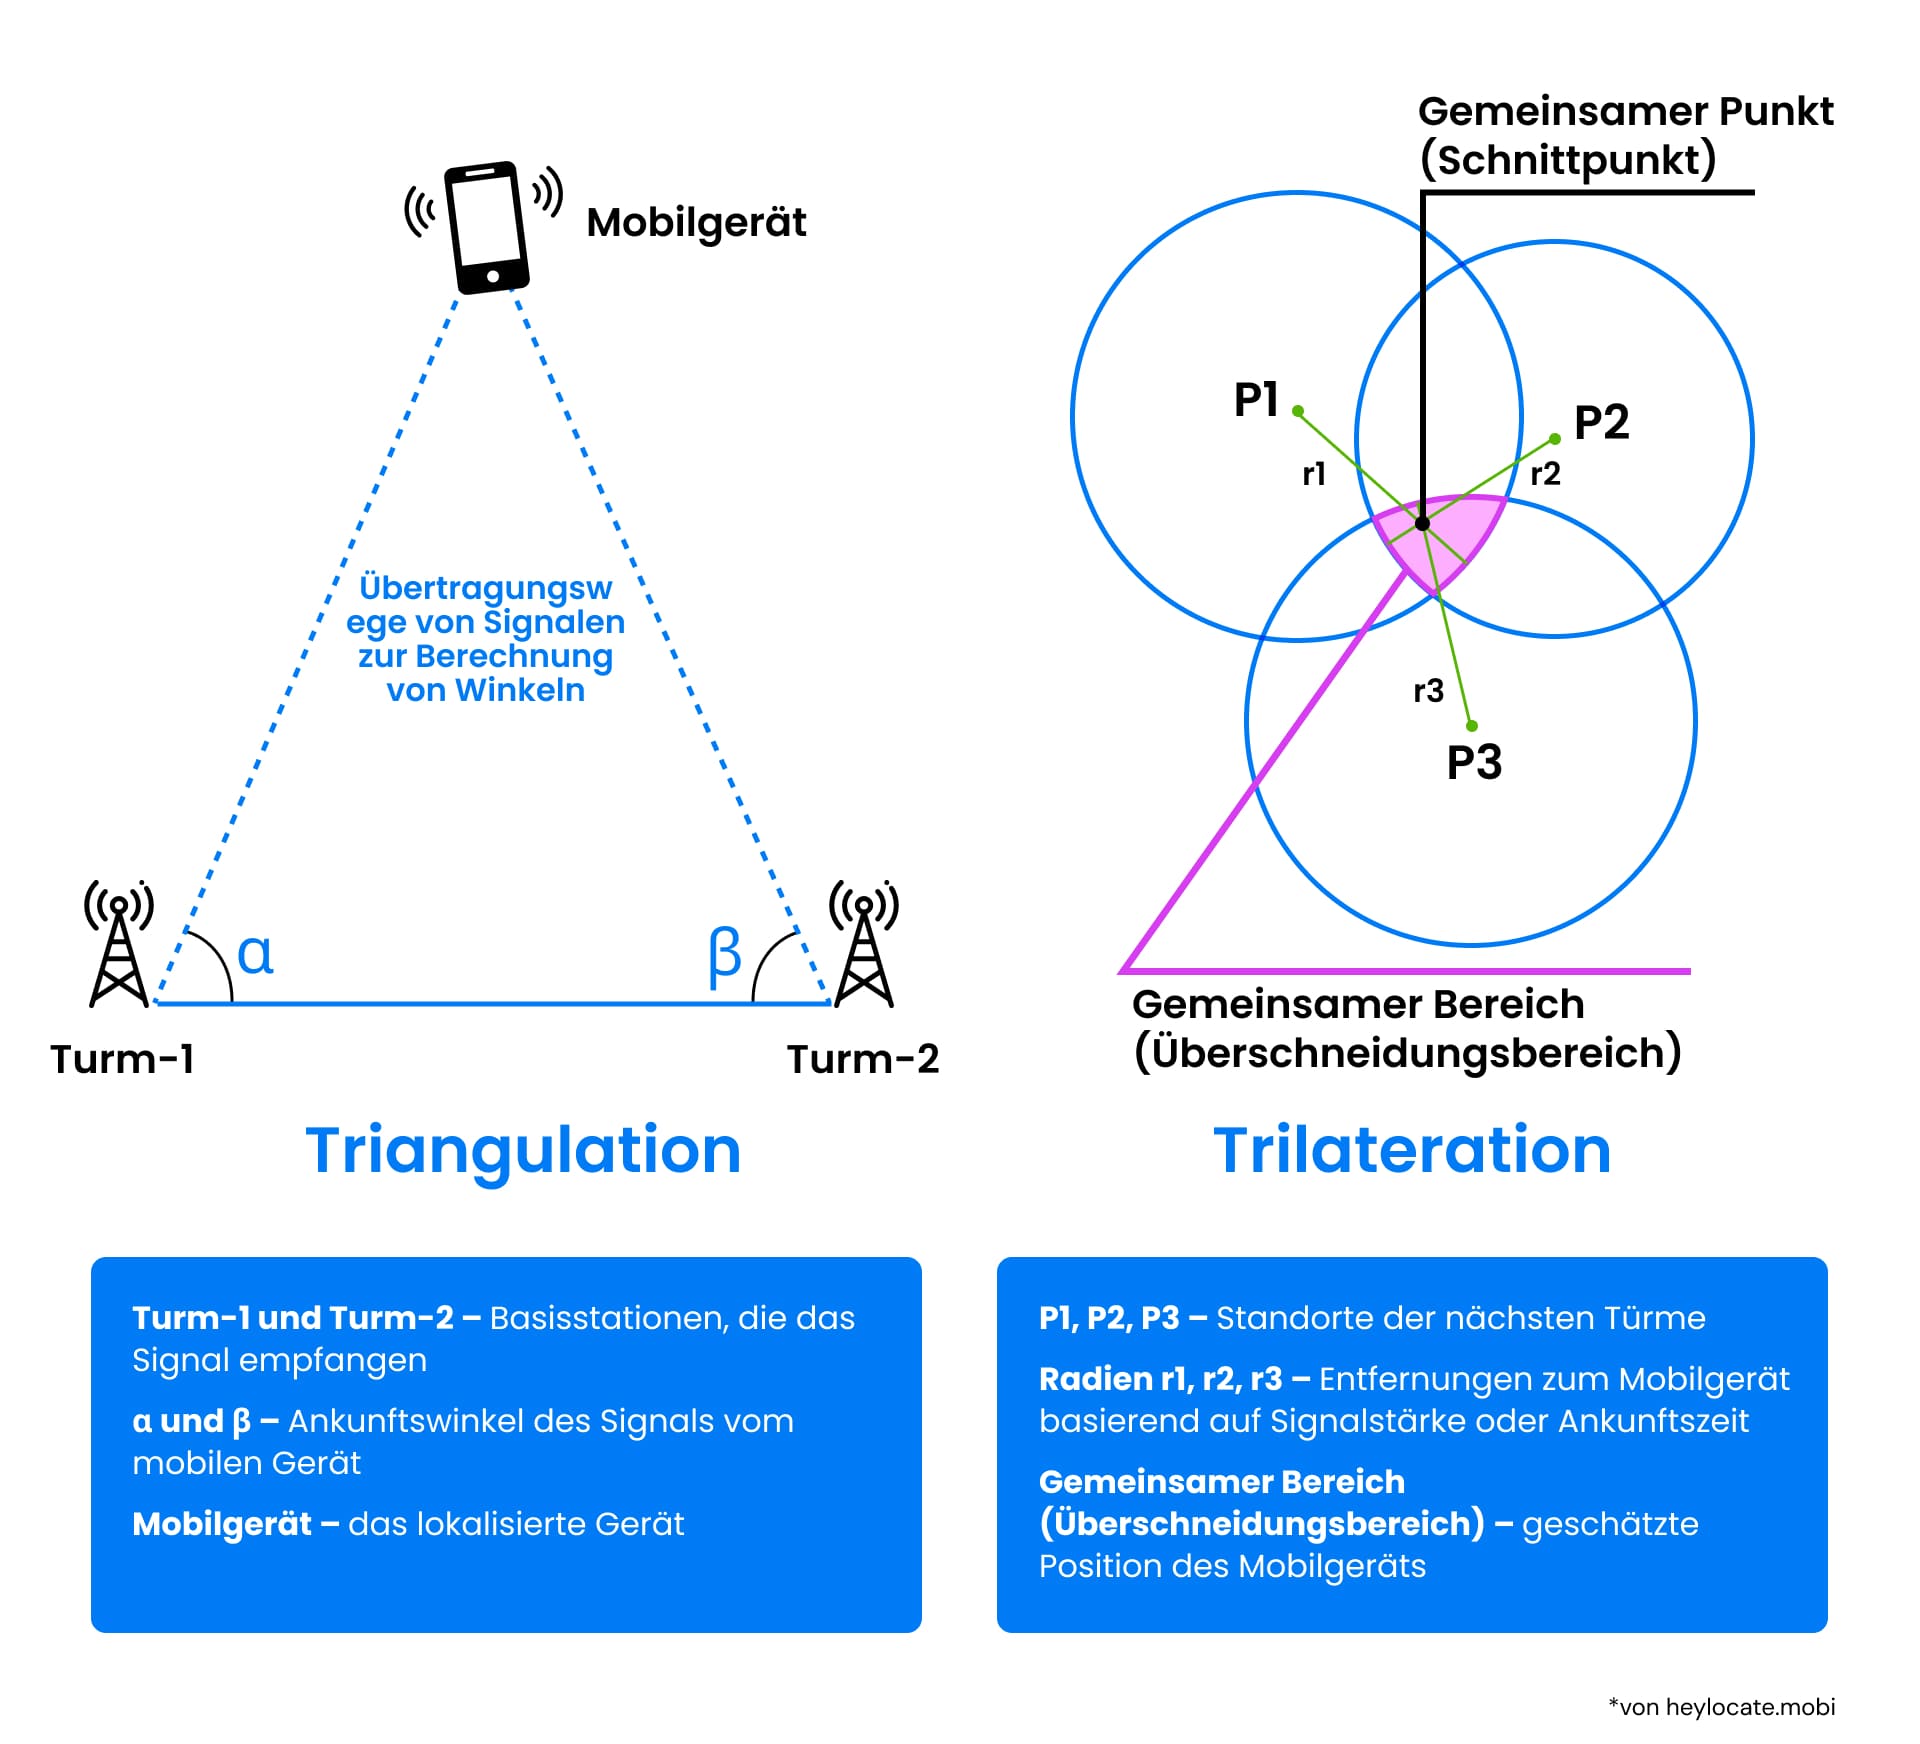 Vergleichende Darstellung von Triangulations- und Trilaterationsverfahren, die in Mobilfunknetzen zur Ortung von Handgeräten unter Verwendung der Winkel und Schnittpunkte der Signale von Mobilfunkmasten verwendet werden, mit einer Erläuterung